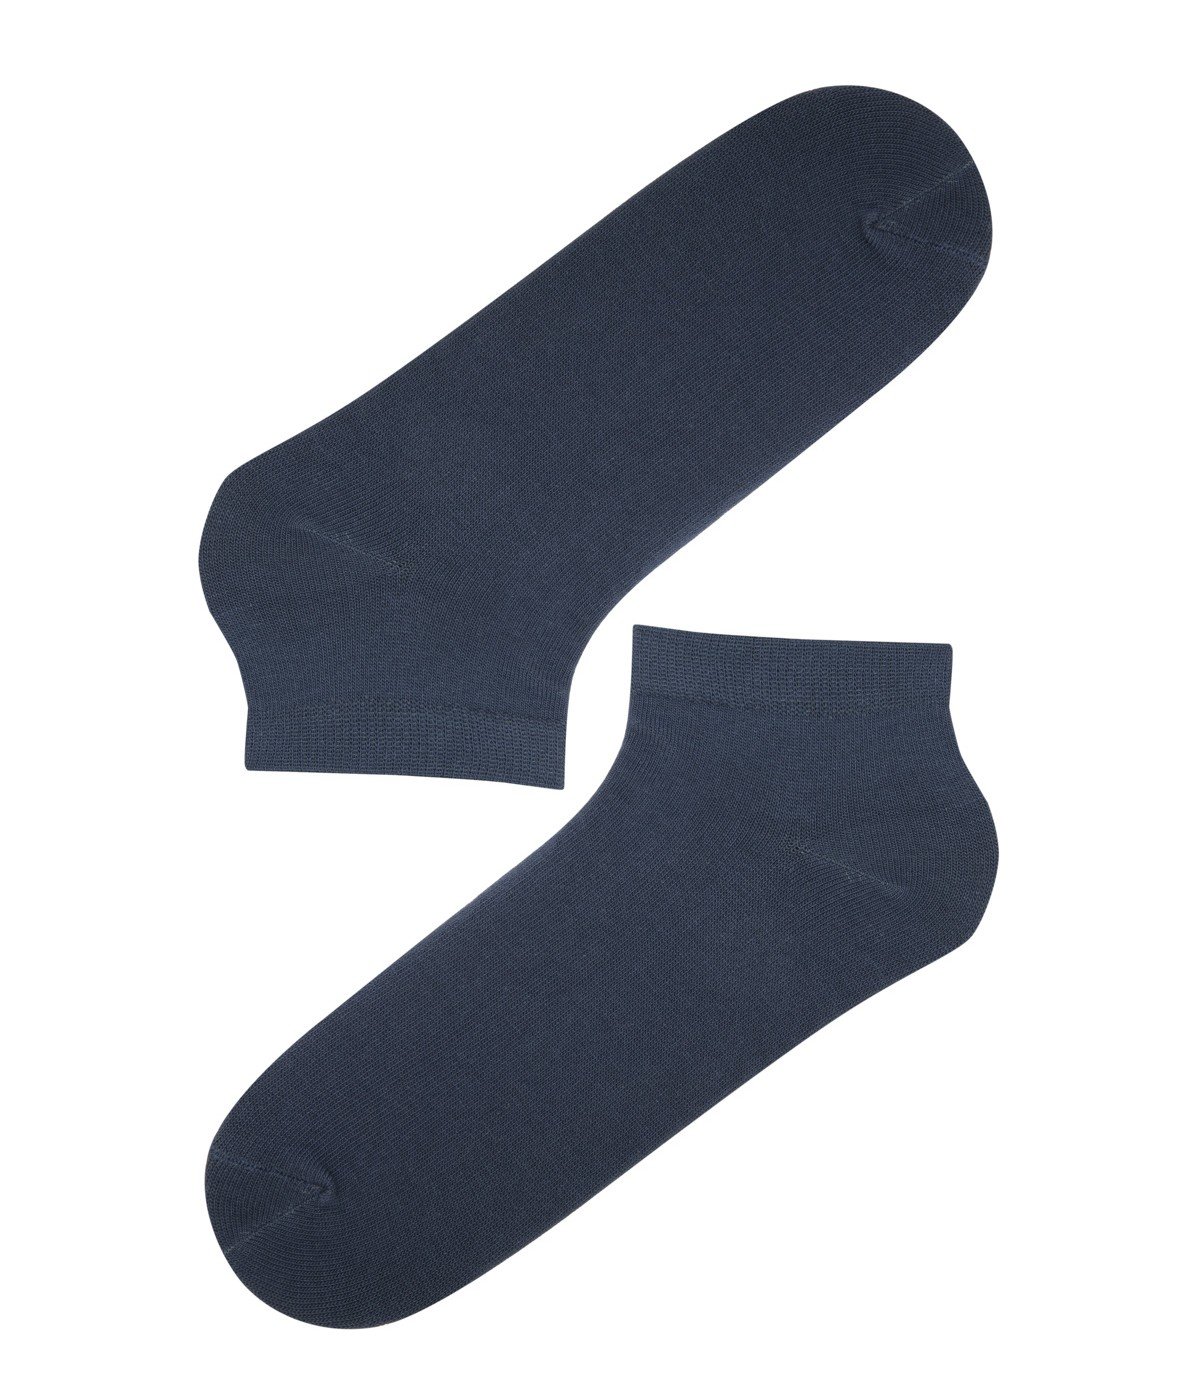 Simple 4 In 1 Socks